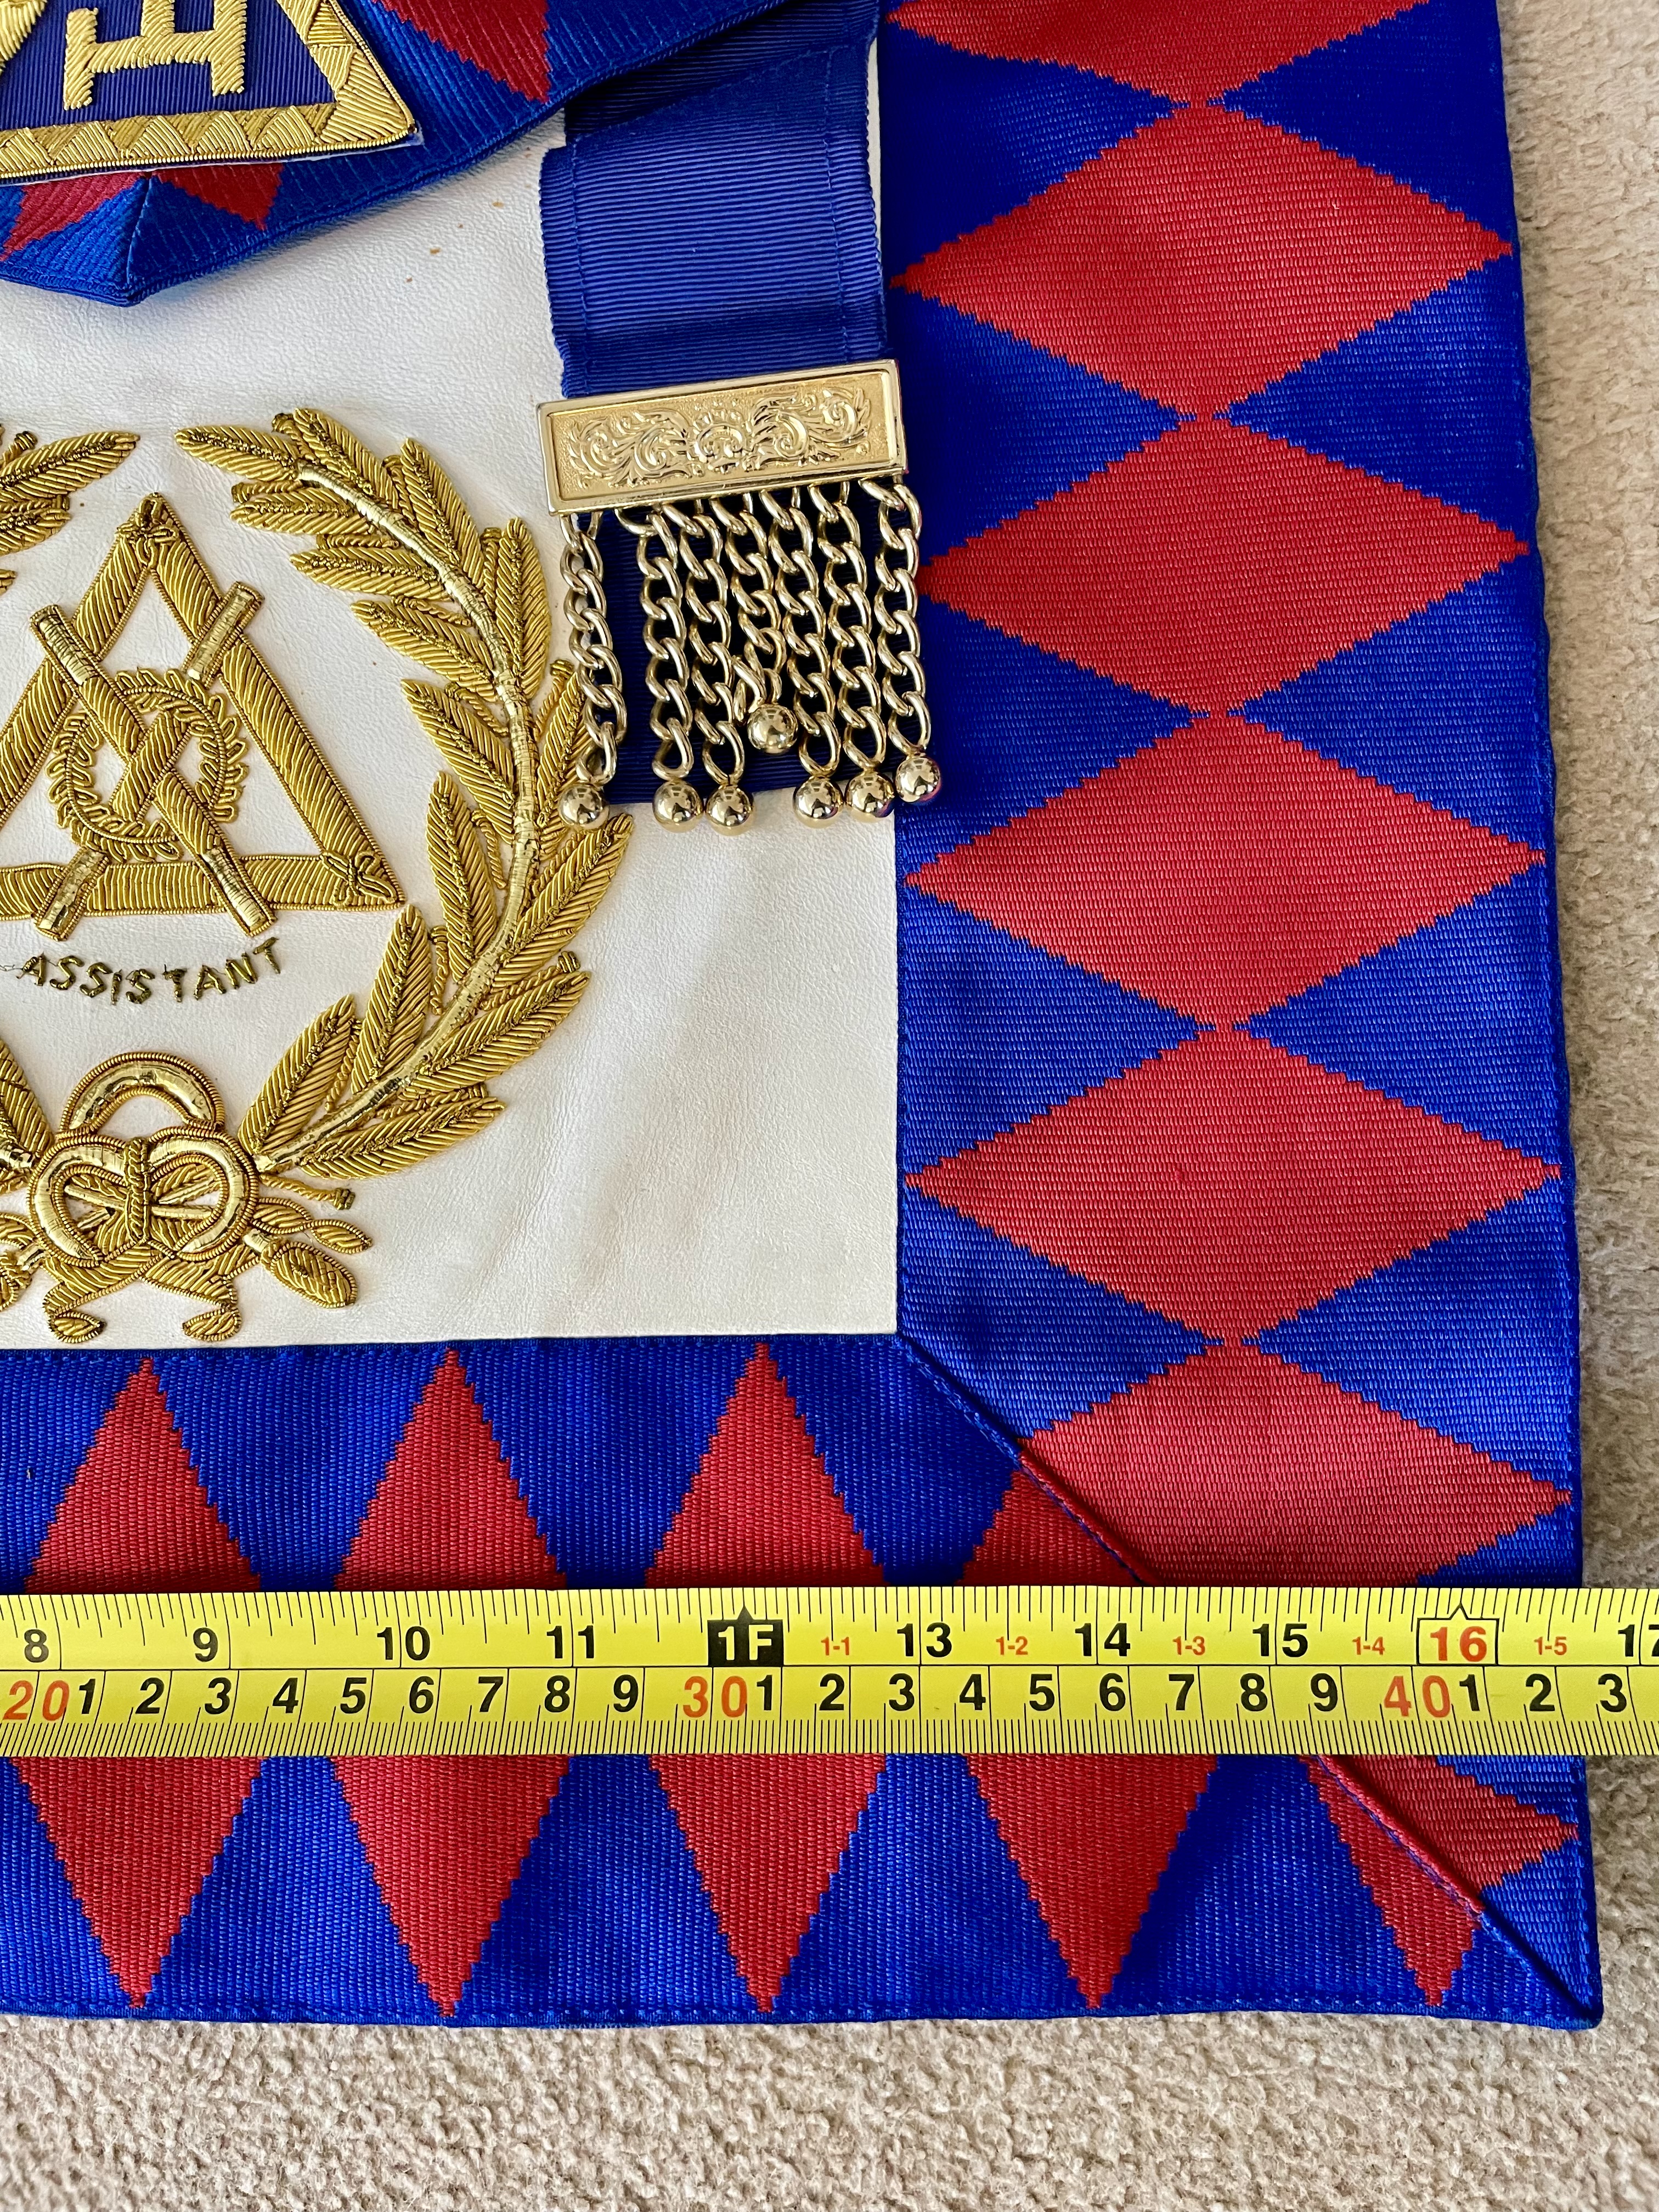 Masonic Freemasons Assistant Apron Bag - Image 4 of 4